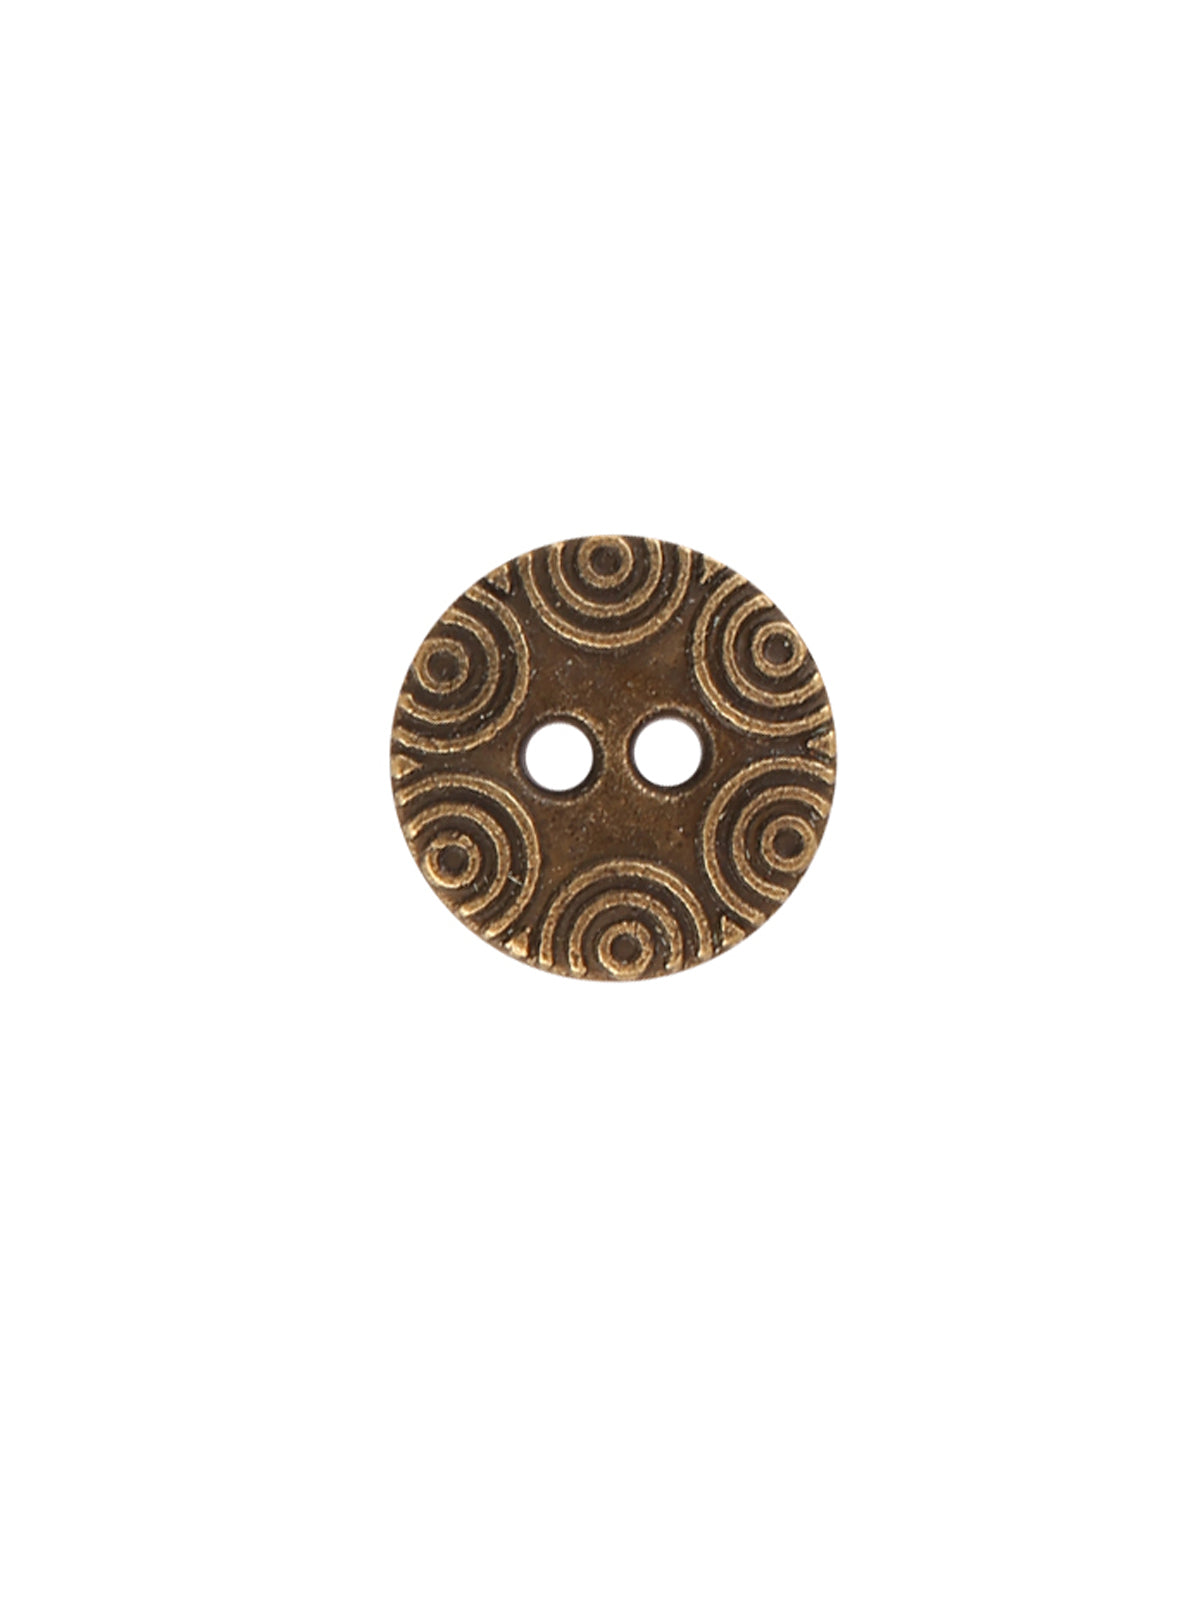 Decorative Round Shape 2-Hole Antique Brass Color Metal Button